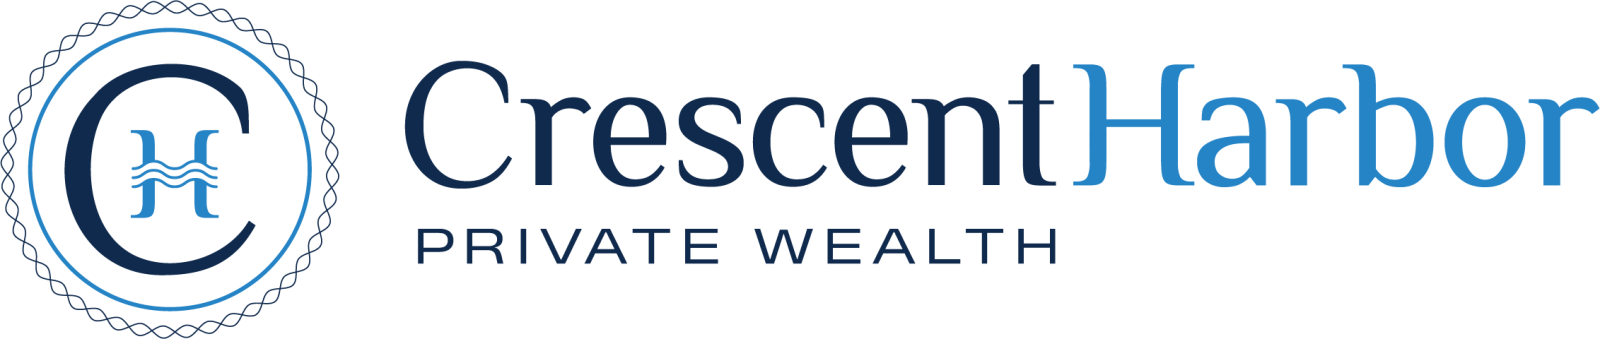 Crescent Harbor Private Wealth Logo